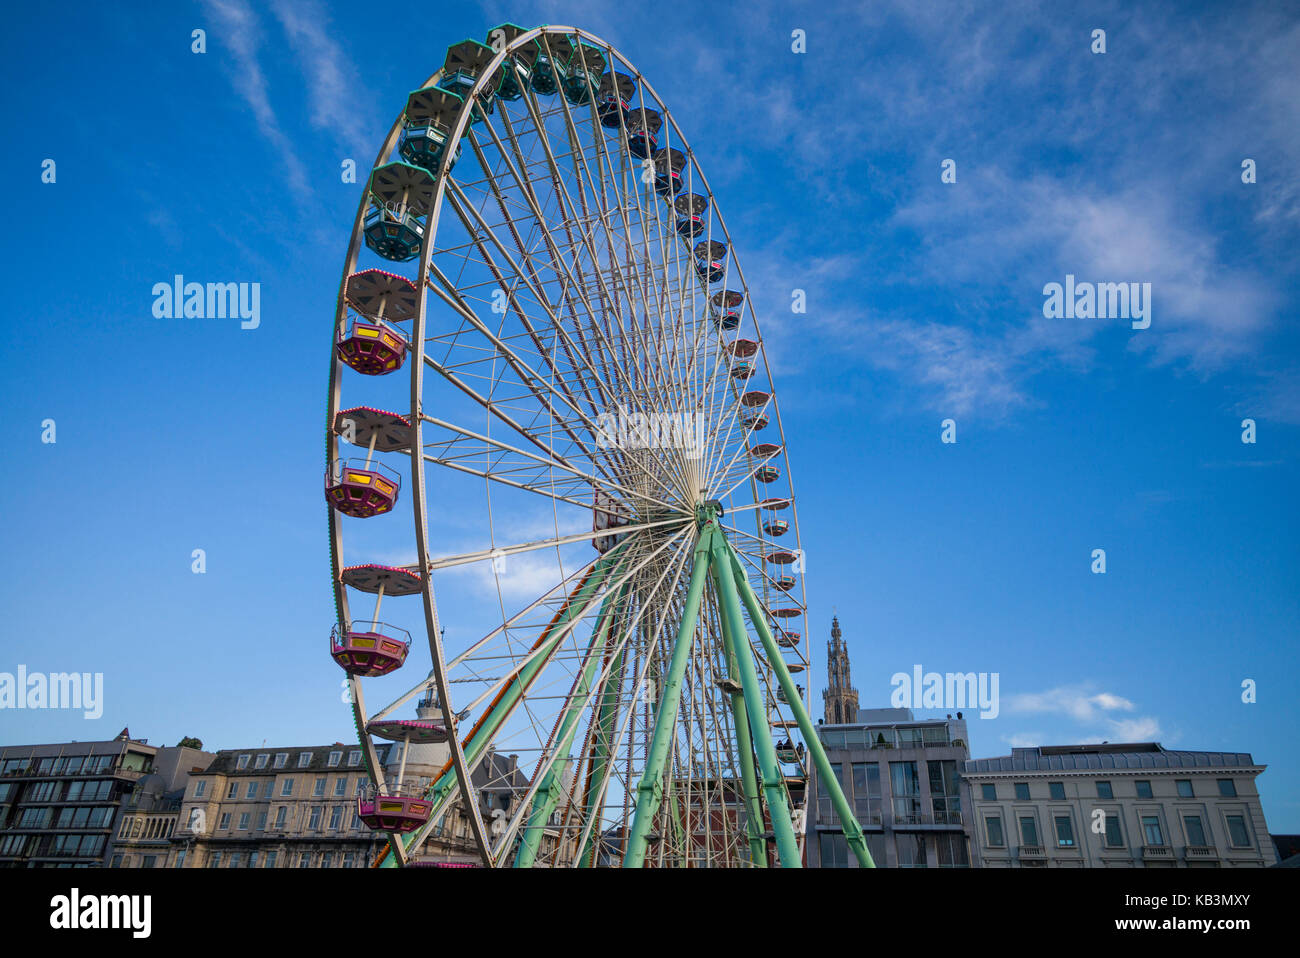 Belgique, Anvers, Anvers, steenplein grande roue Banque D'Images